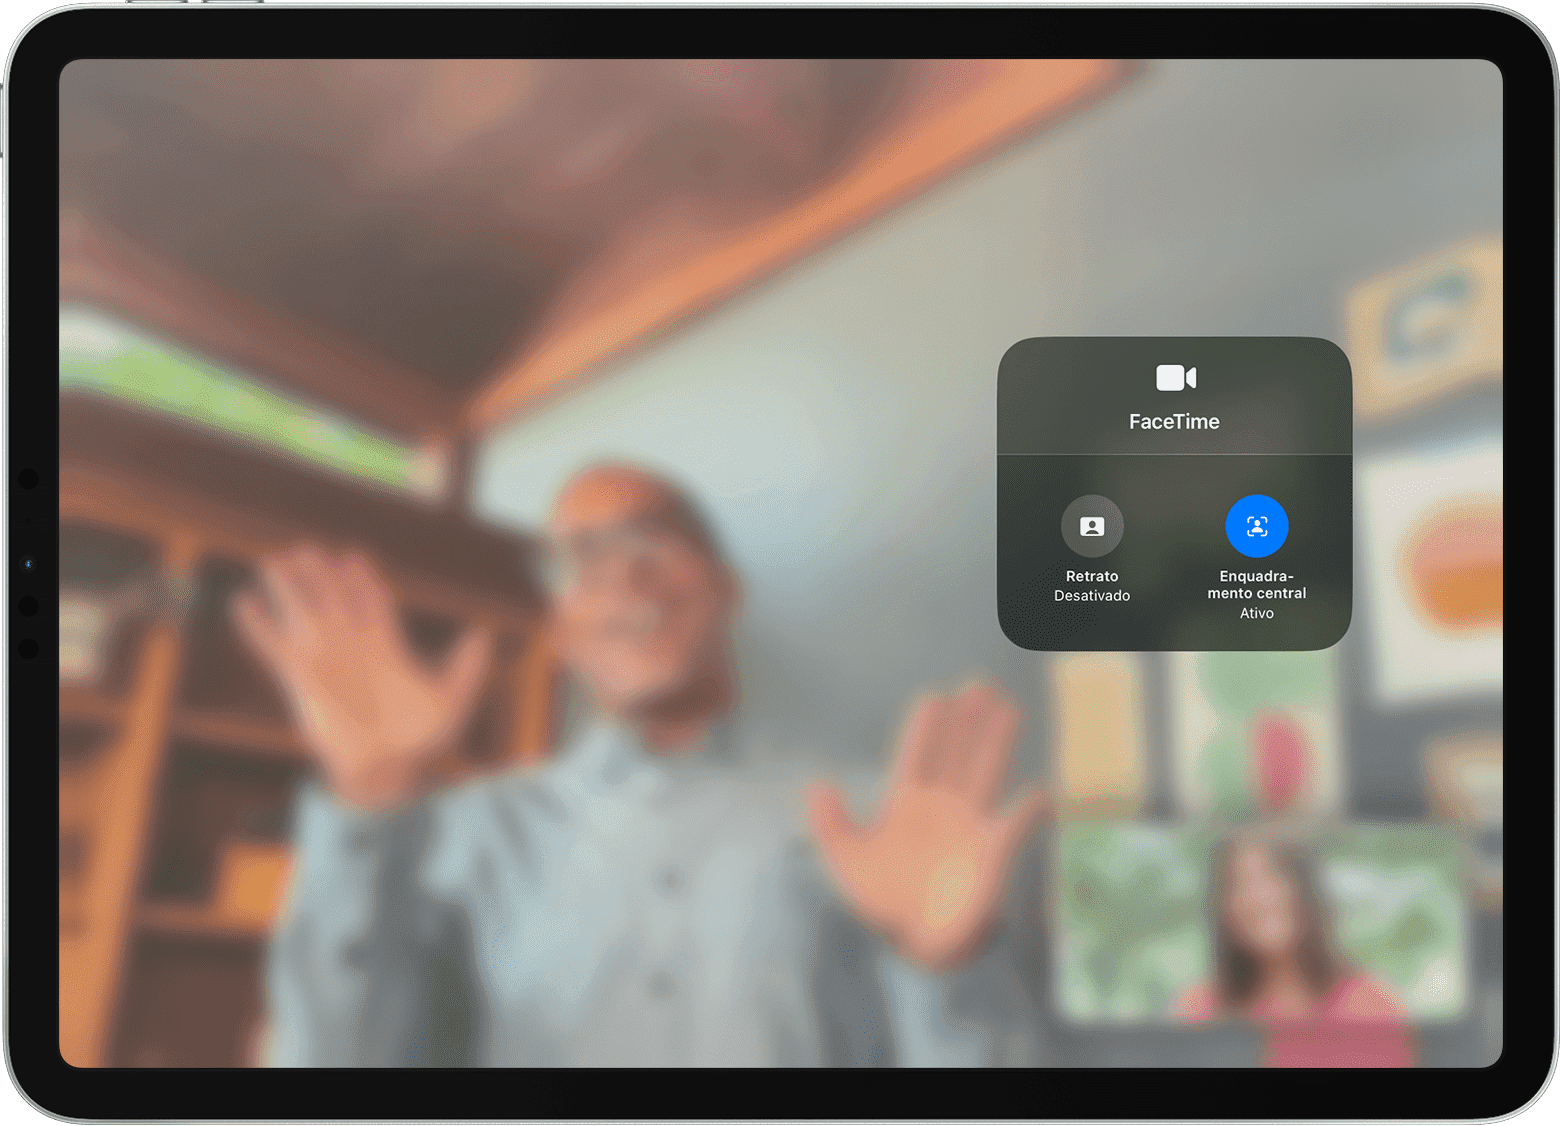 Ecrã do iPad a mostrar uma chamada FaceTime com as opções de Efeitos visíveis